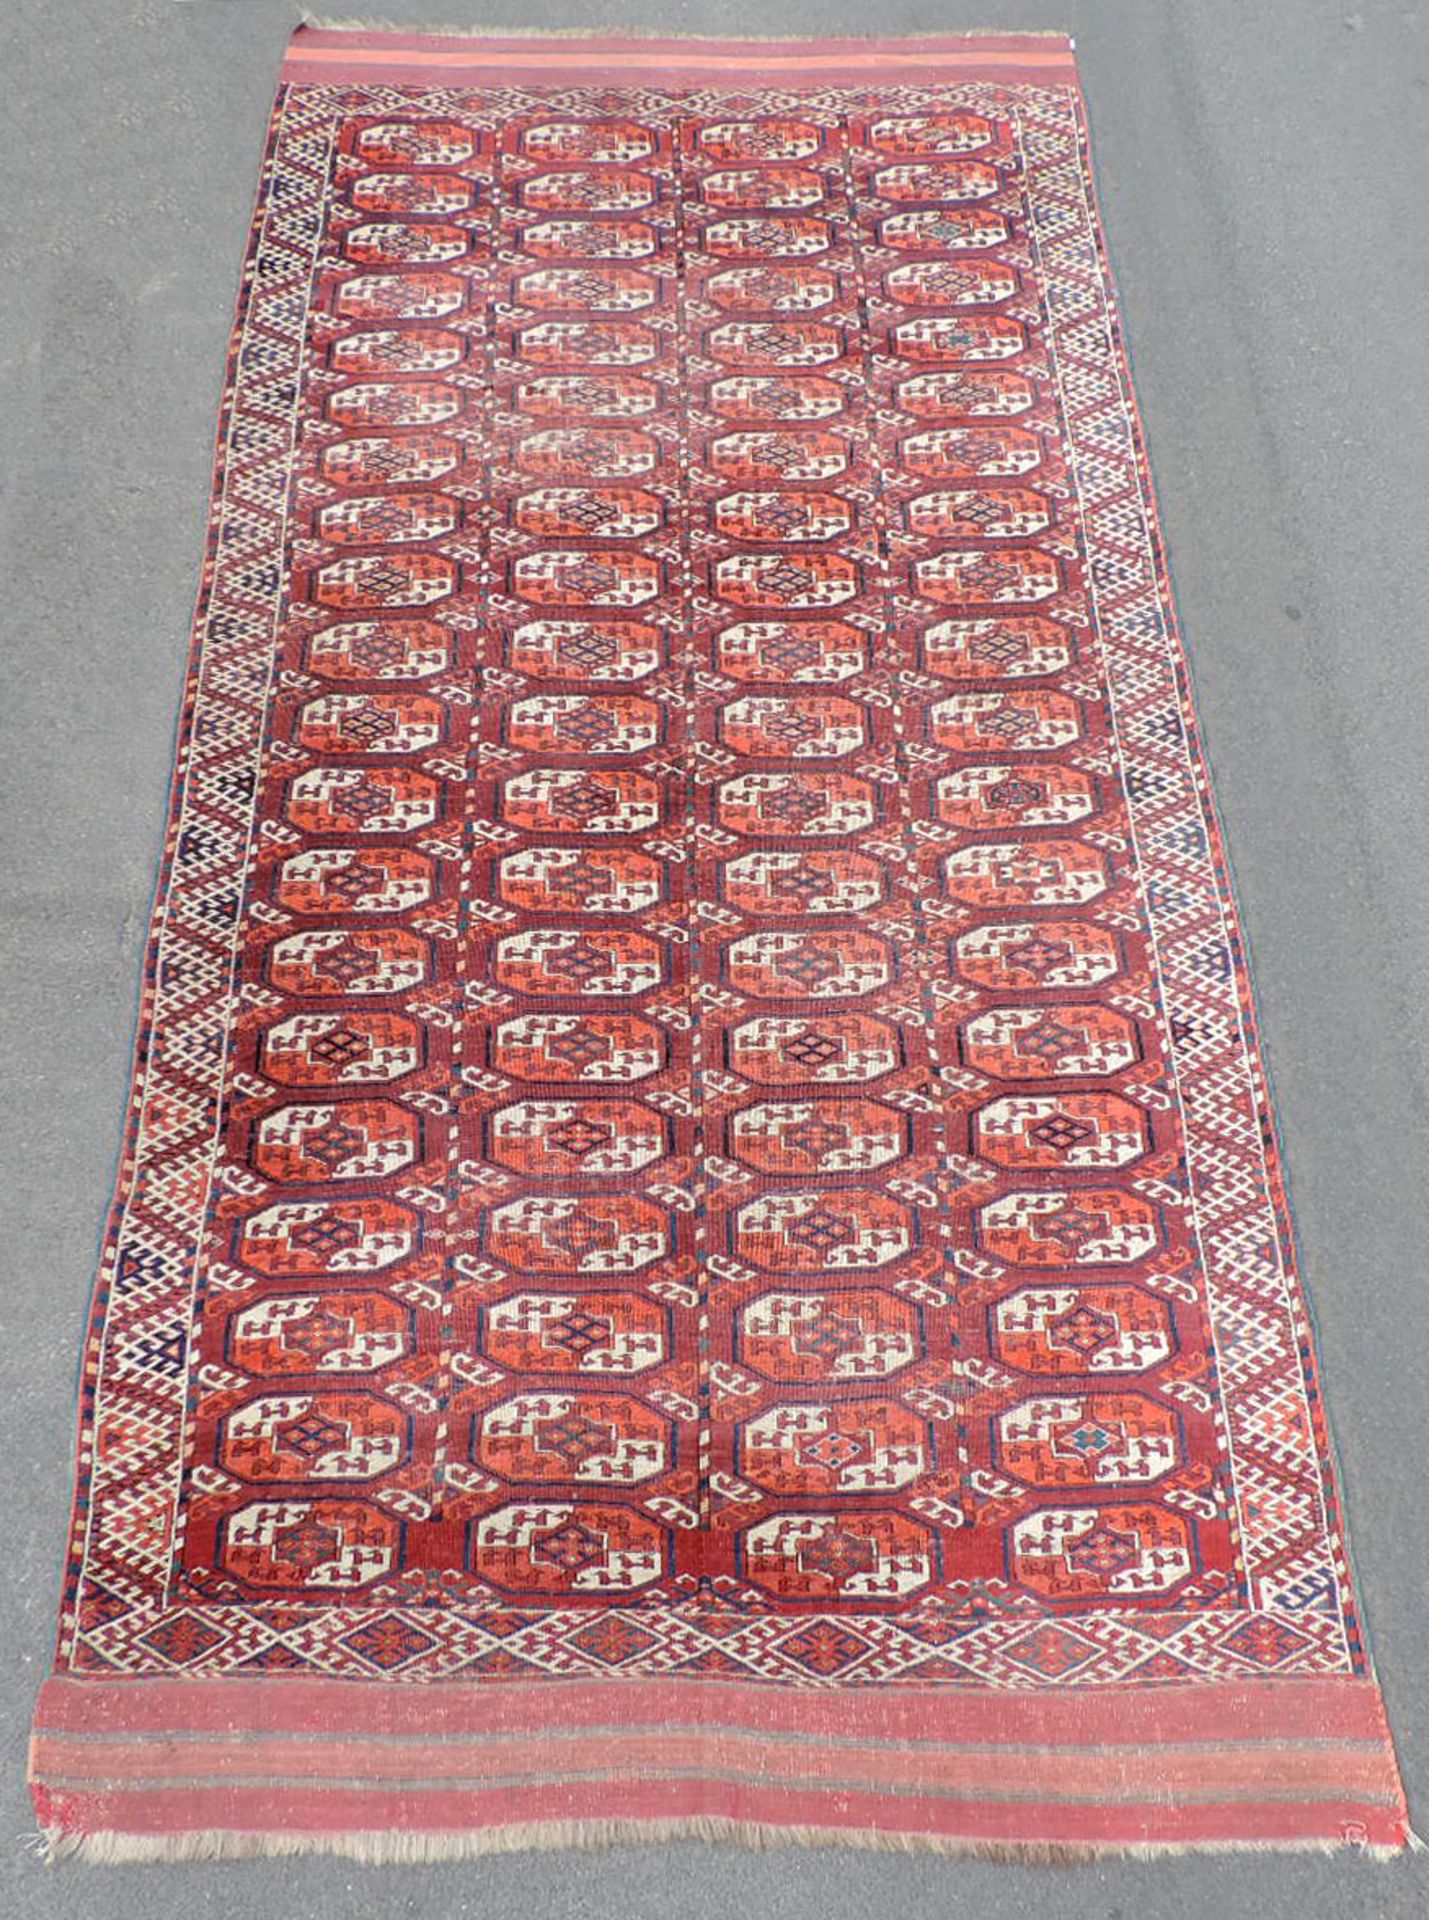 Kizil Ayak Hauptteppich. Turkmenistan, antik, um 1850.427 cm x 200 cm insgesamt. Handgeknüpft, Wolle